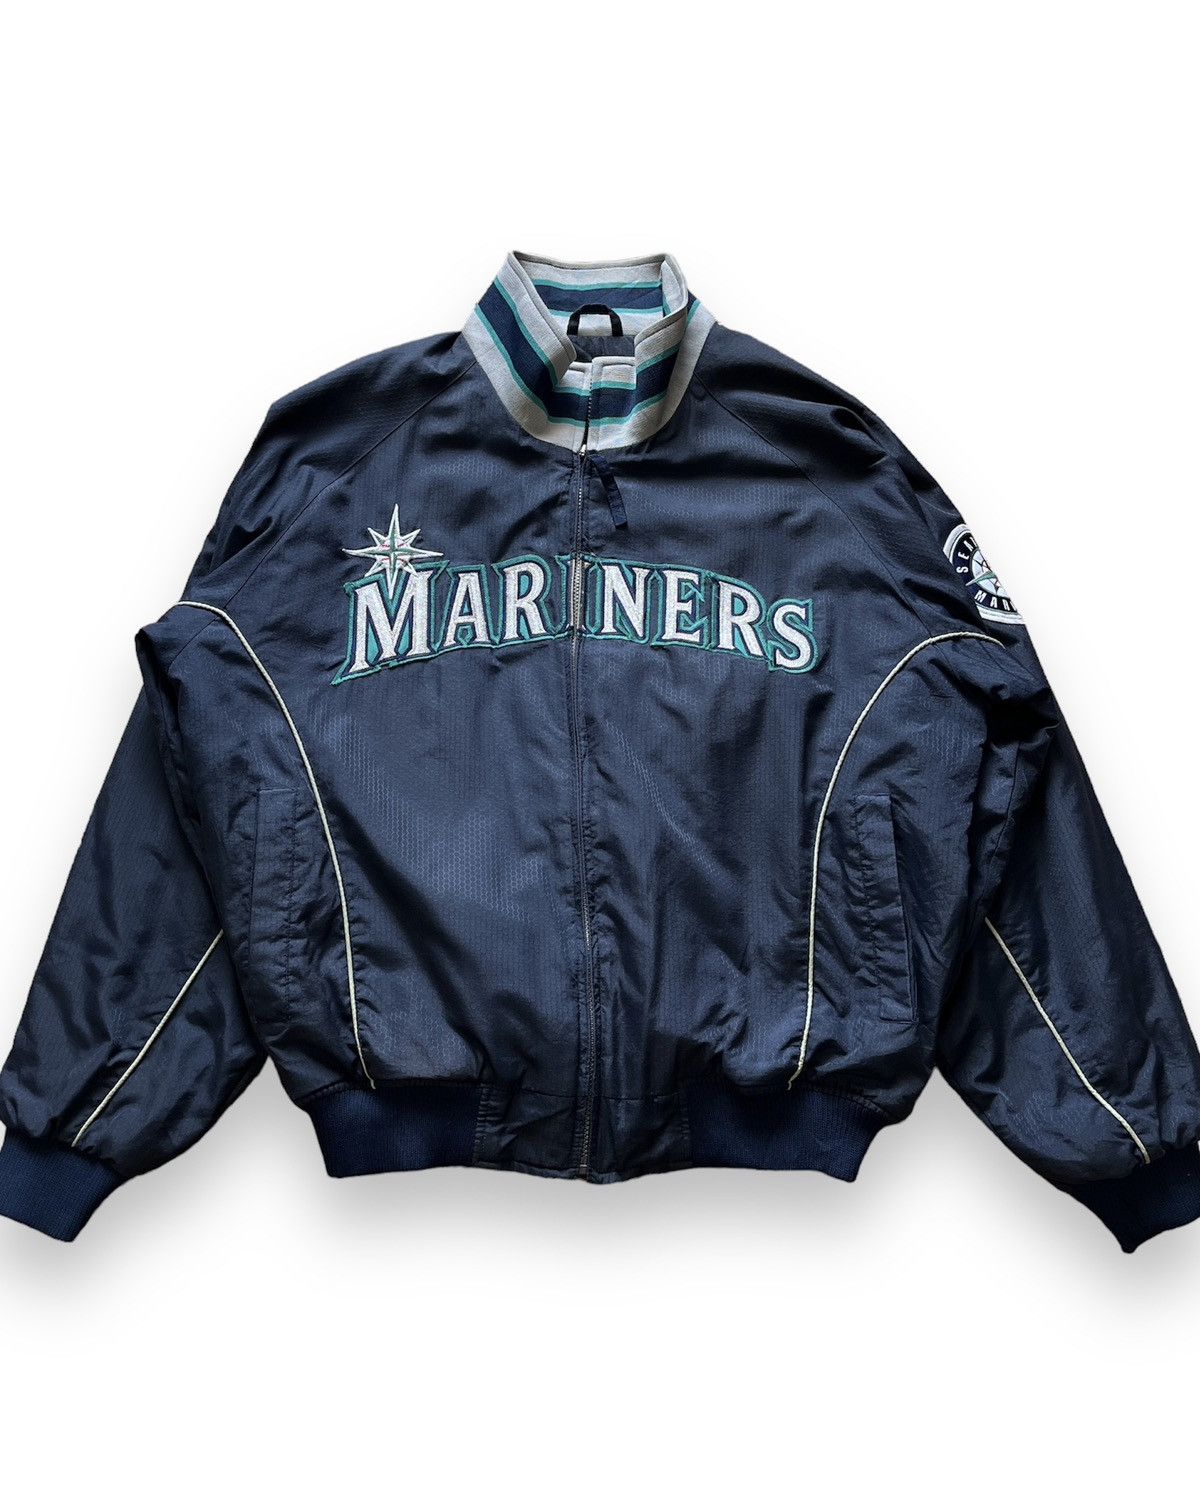 Vintage 1990s Mariners Team MLB Bomber Jacket - 1